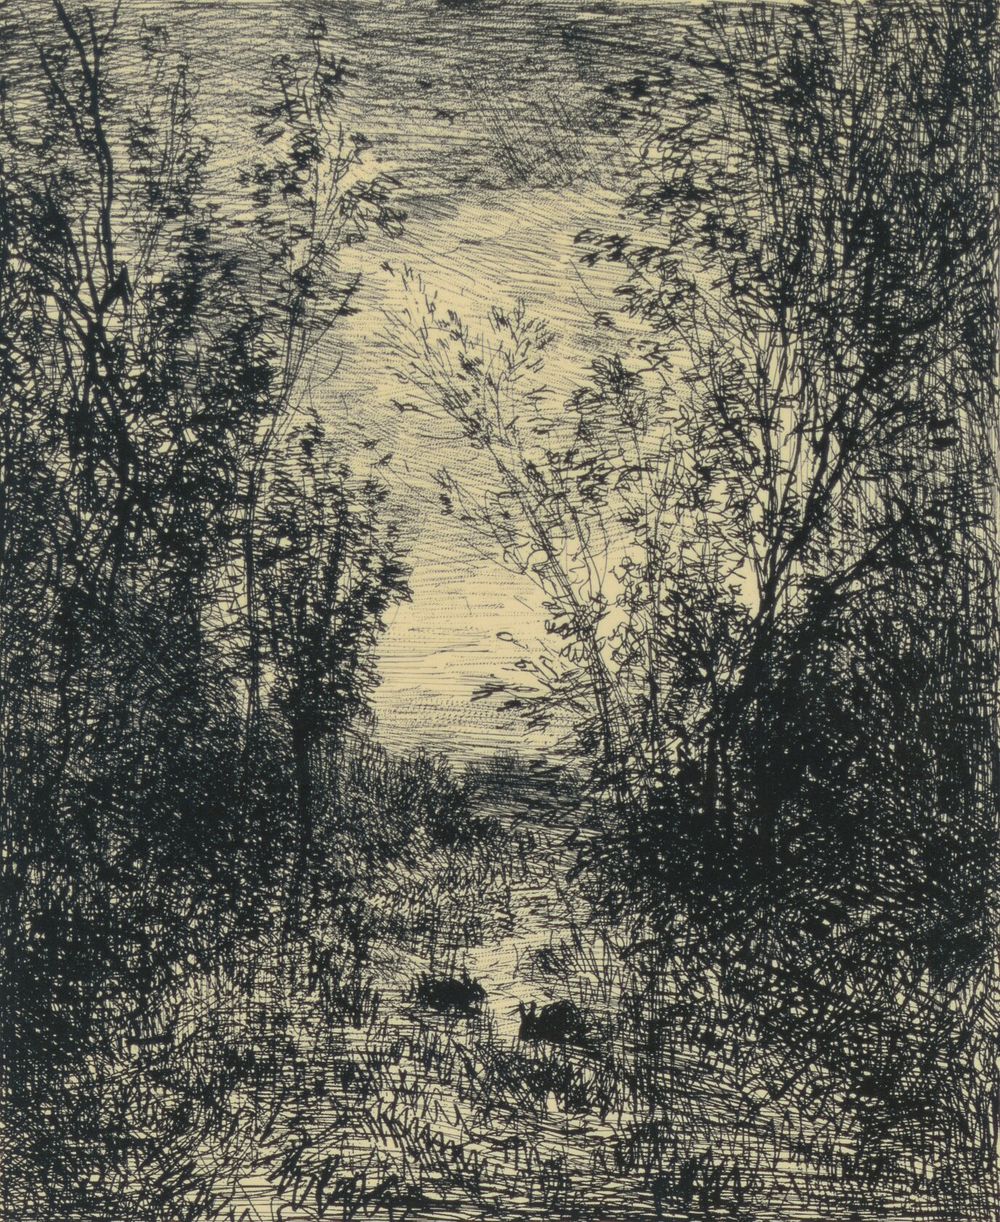 Le Ruisseau Dans La Clairière by Charles François Daubigny